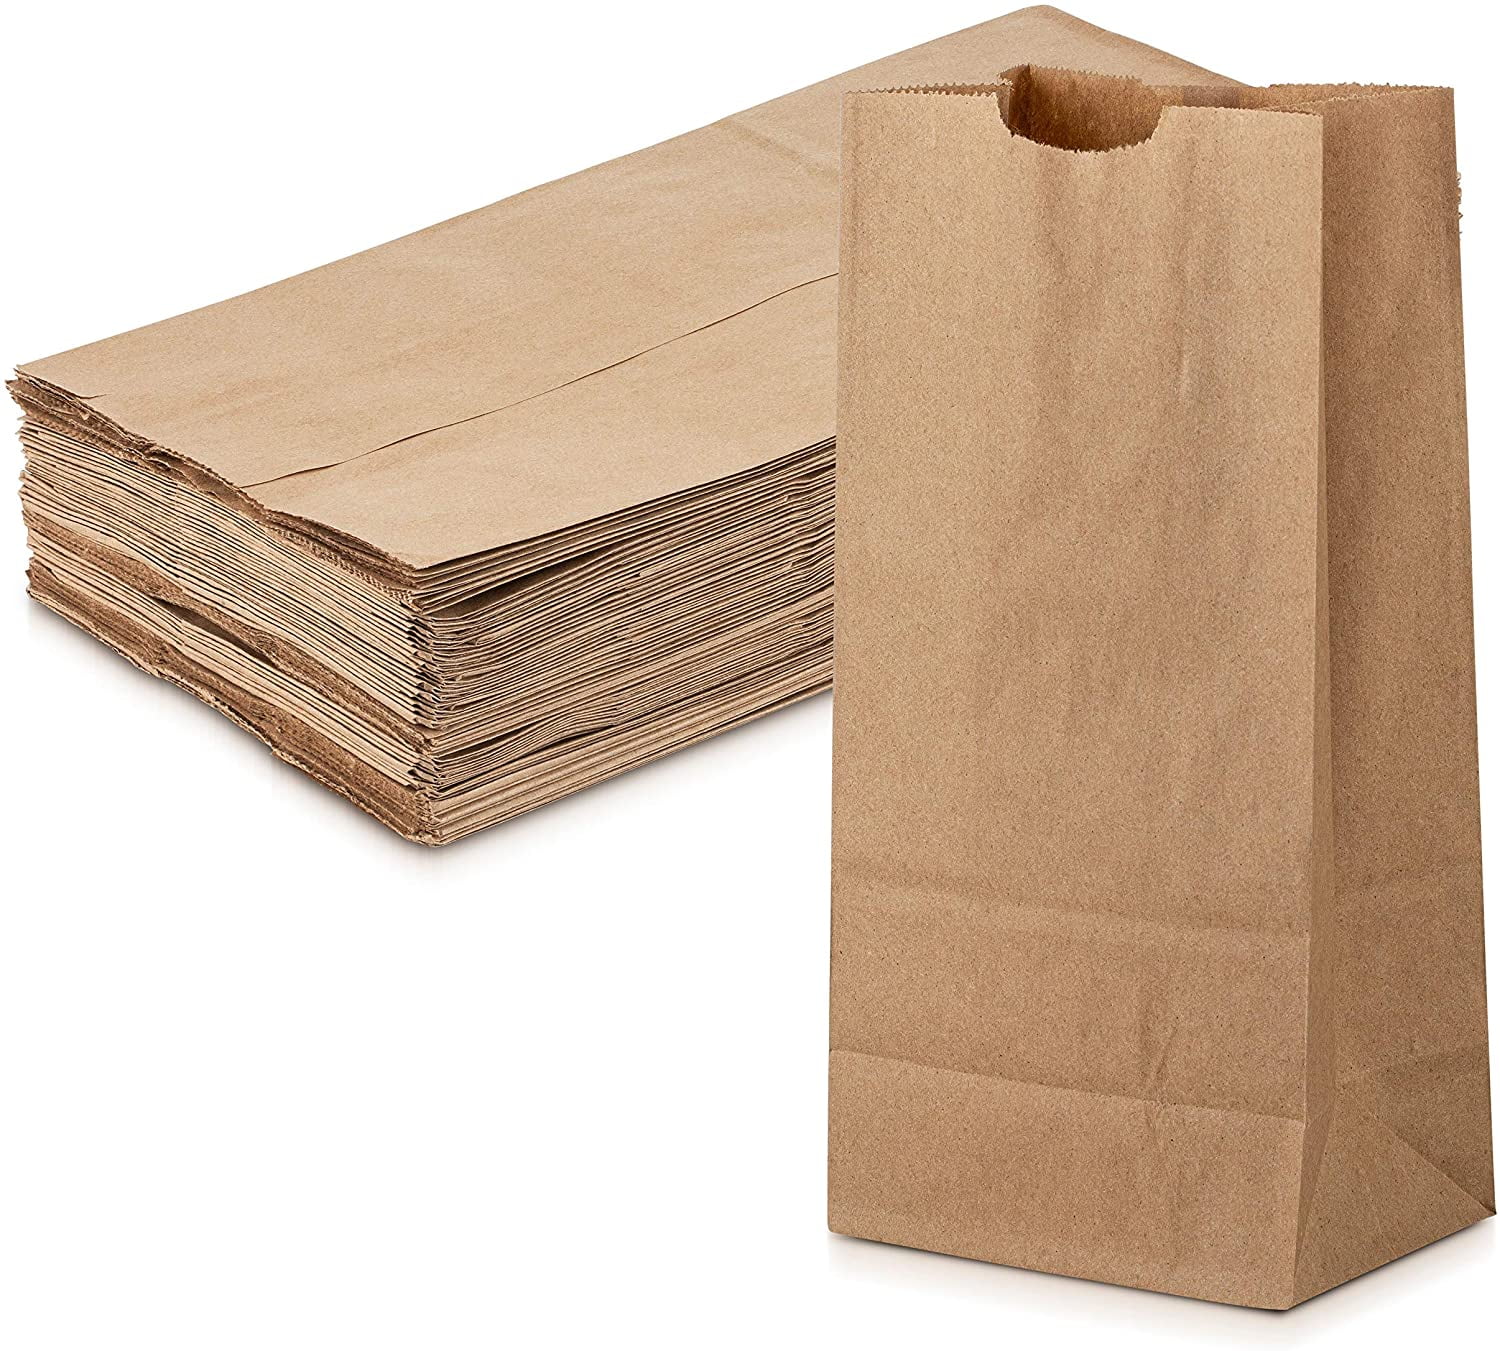 Sac lunch bag lunch box + pain de glace + sac F : le sac de 750ml à Prix  Carrefour